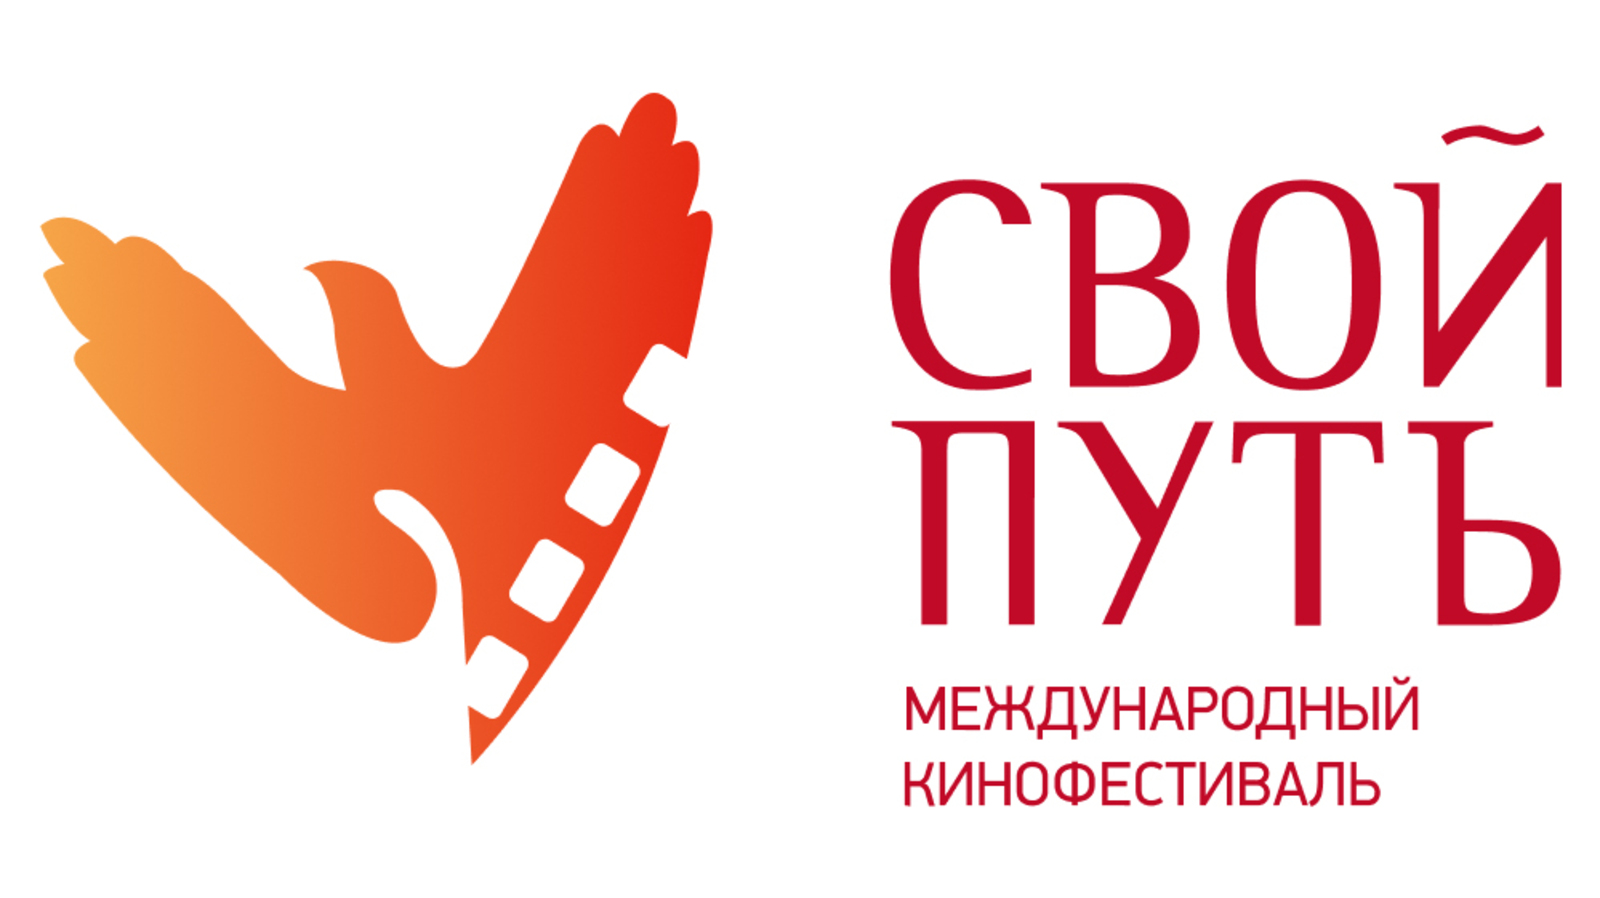 Уфа станет площадкой первого Международного кинофестиваля «Свой путь»